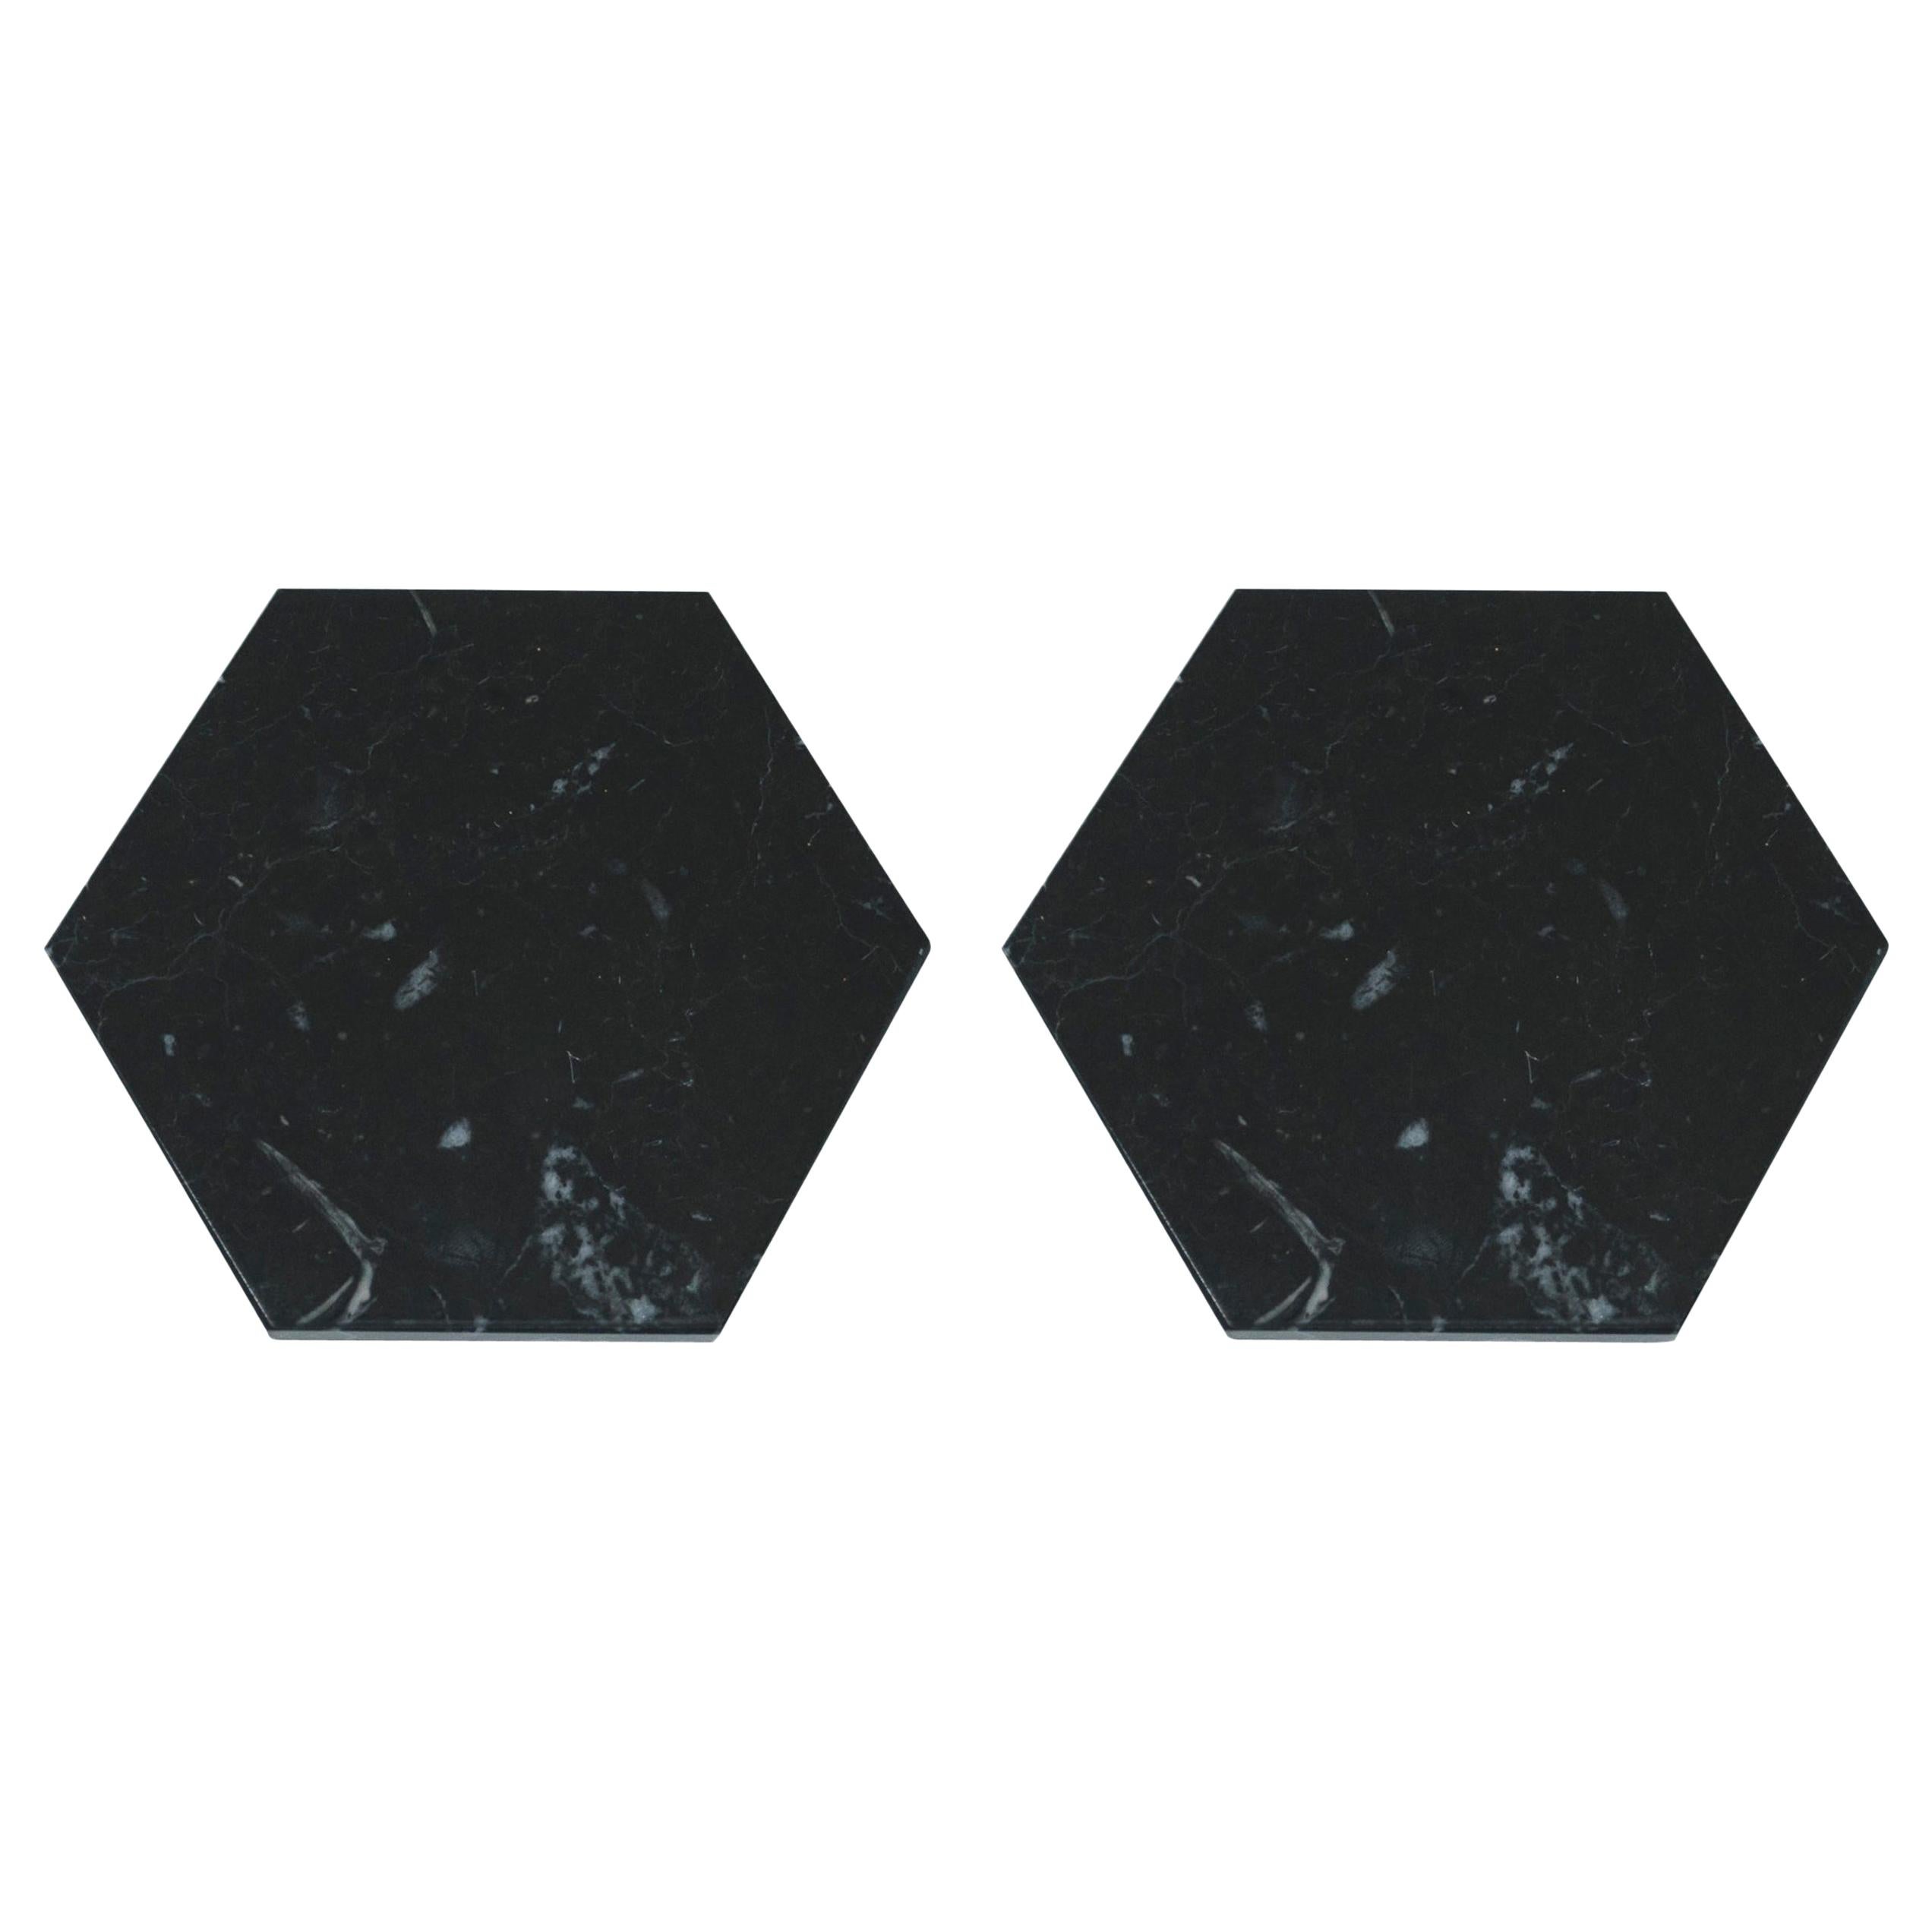 Handgefertigtes Set von 2 sechseckigen Untersetzern aus schwarzem Marquina-Marmor